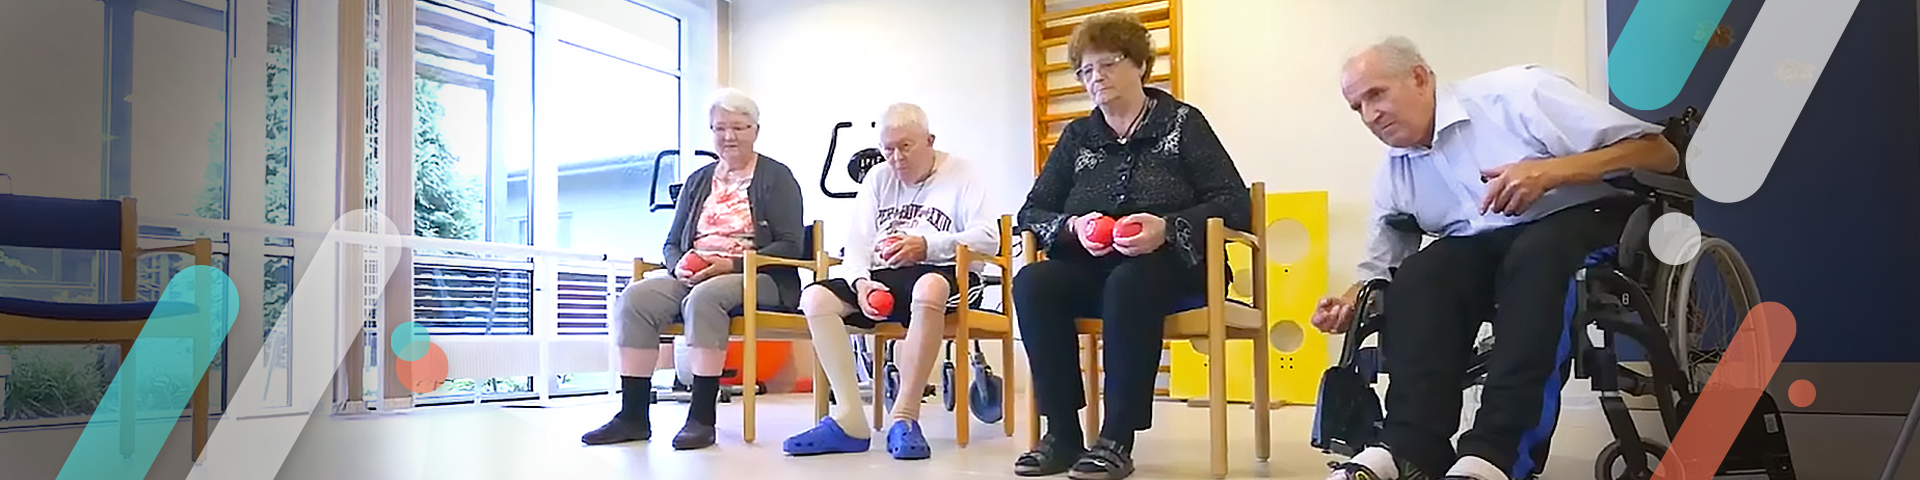 شیوه نوین مراقبت از سالمندان در کشور دانمارک